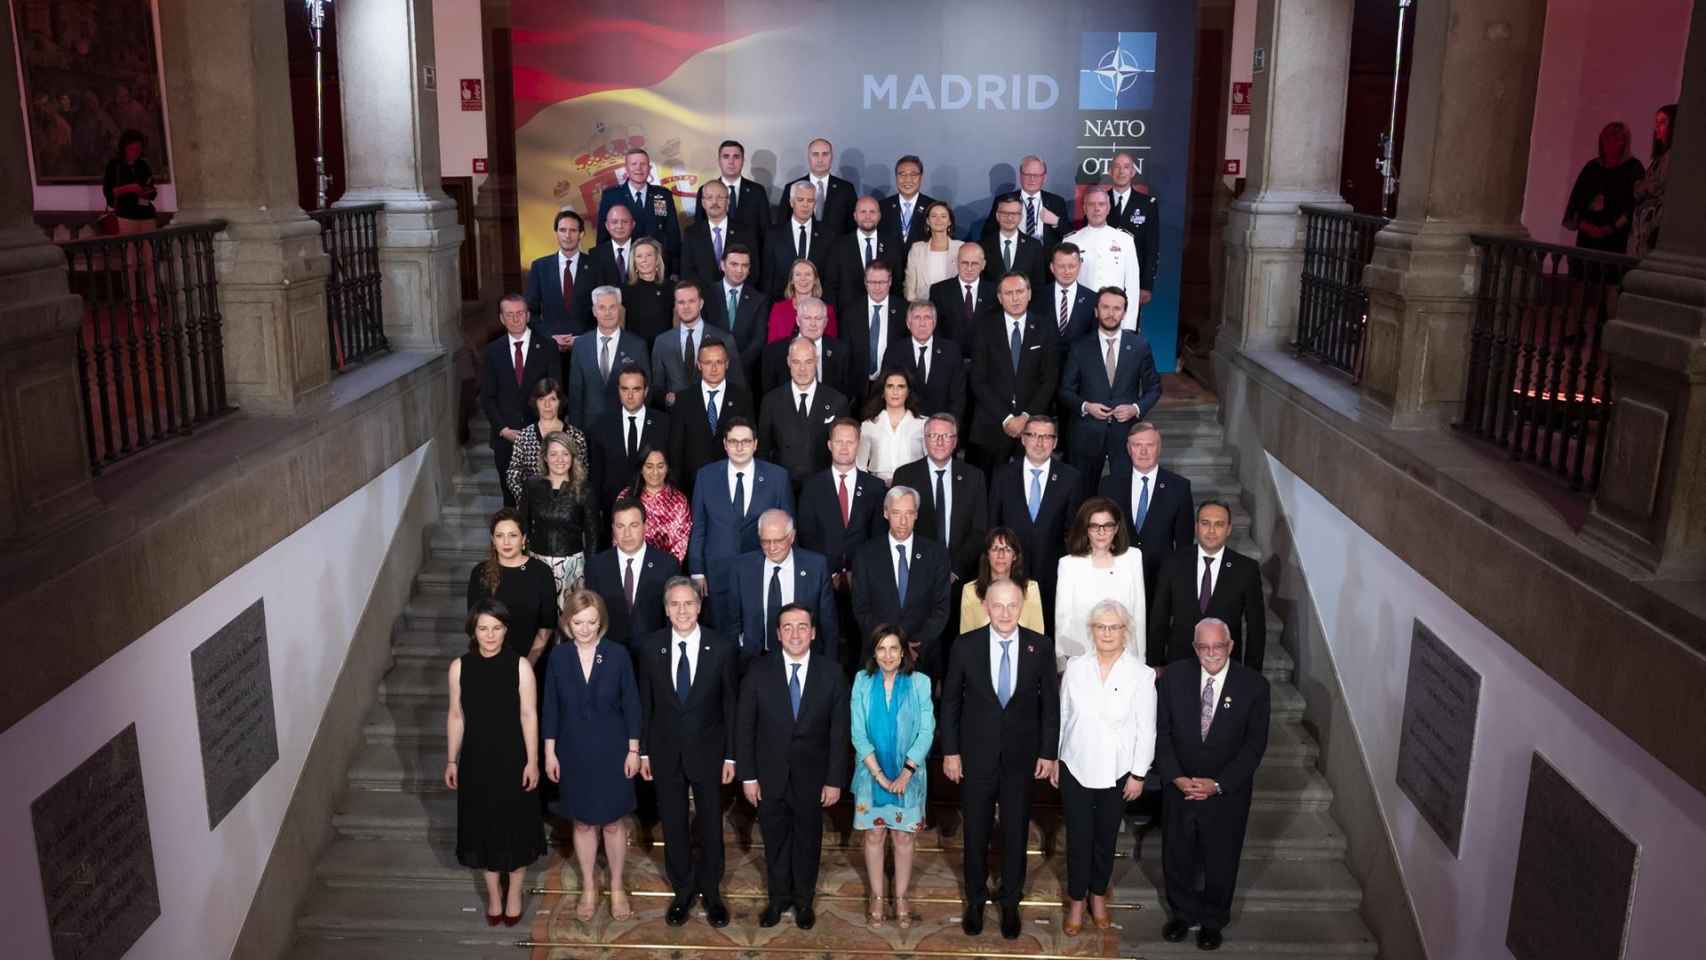 Cena en el Palacio de Santa Cruz, sede del Ministerio de Asuntos Exteriores, Unión Europea y Cooperación de España, con los ministros de Exteriores y Defensa de la OTAN